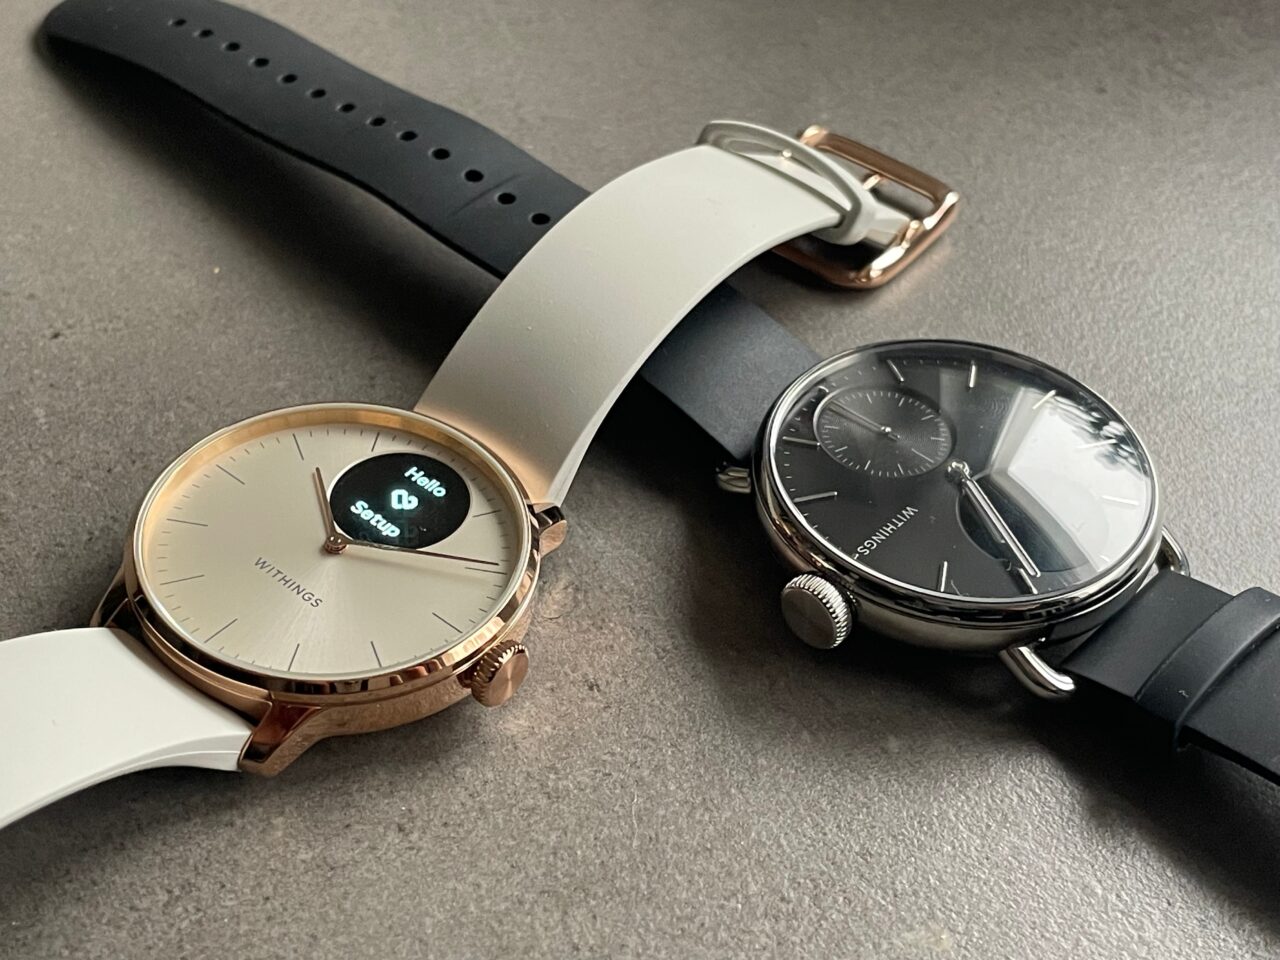 Dwa zegarki na szarym tle, jeden z miedzianą kopertą i białą tarczą z subcyferblatem powiadomień, drugi czarny z dodatkowym małym tarczą zegarową.